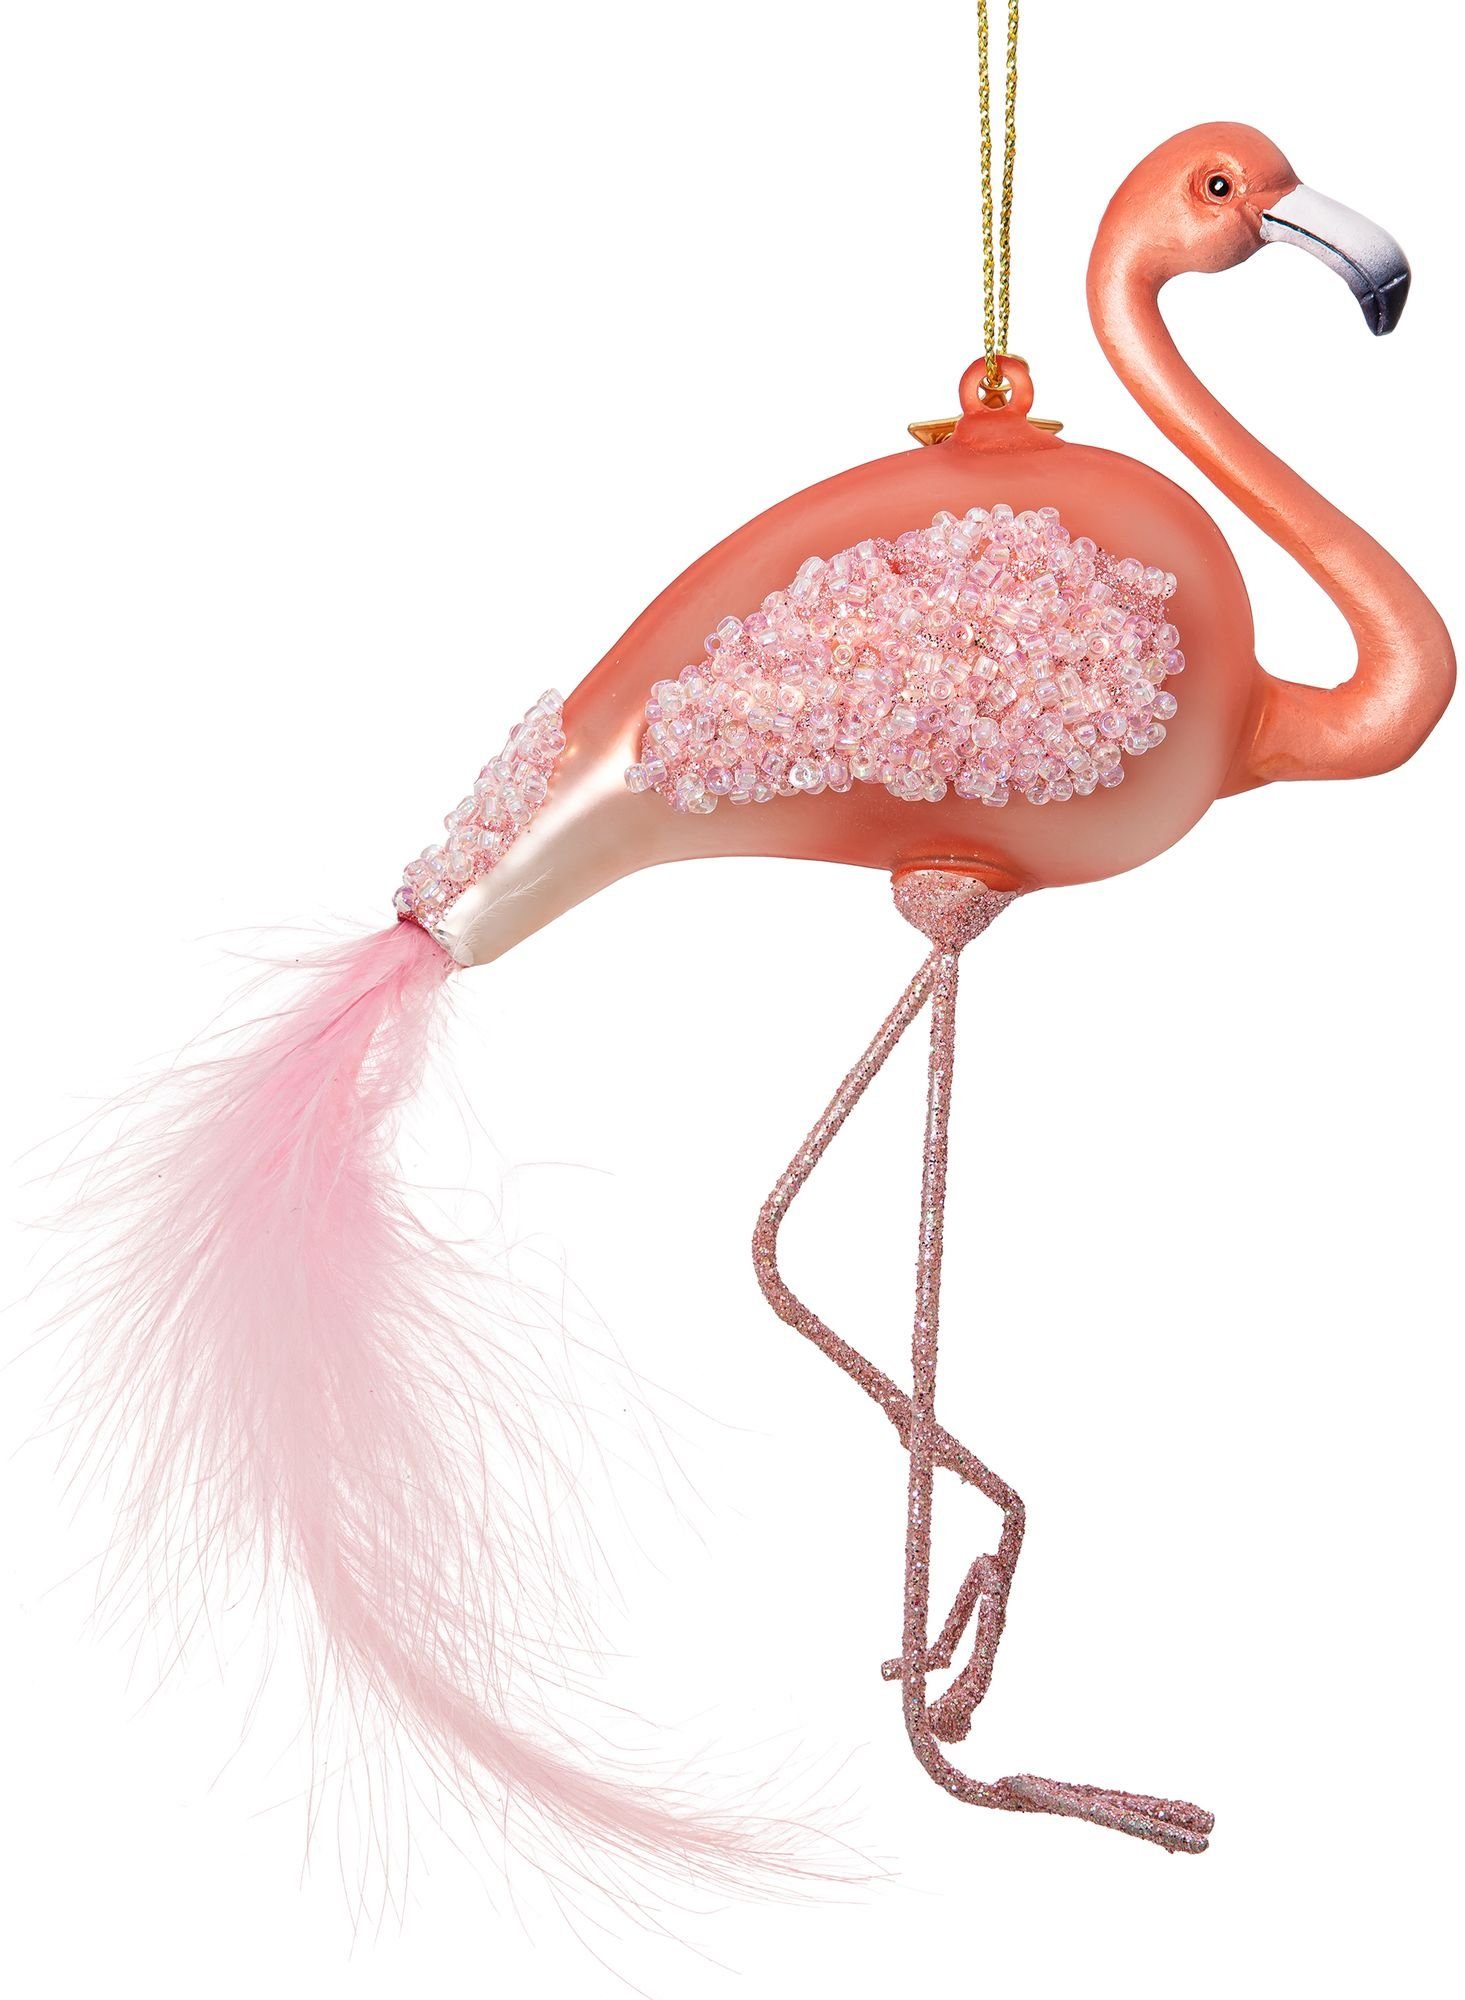 Christbaumschmuck BS551 Weihnachtsbaum Flamingo Anhänger SIKORA Figur Glas